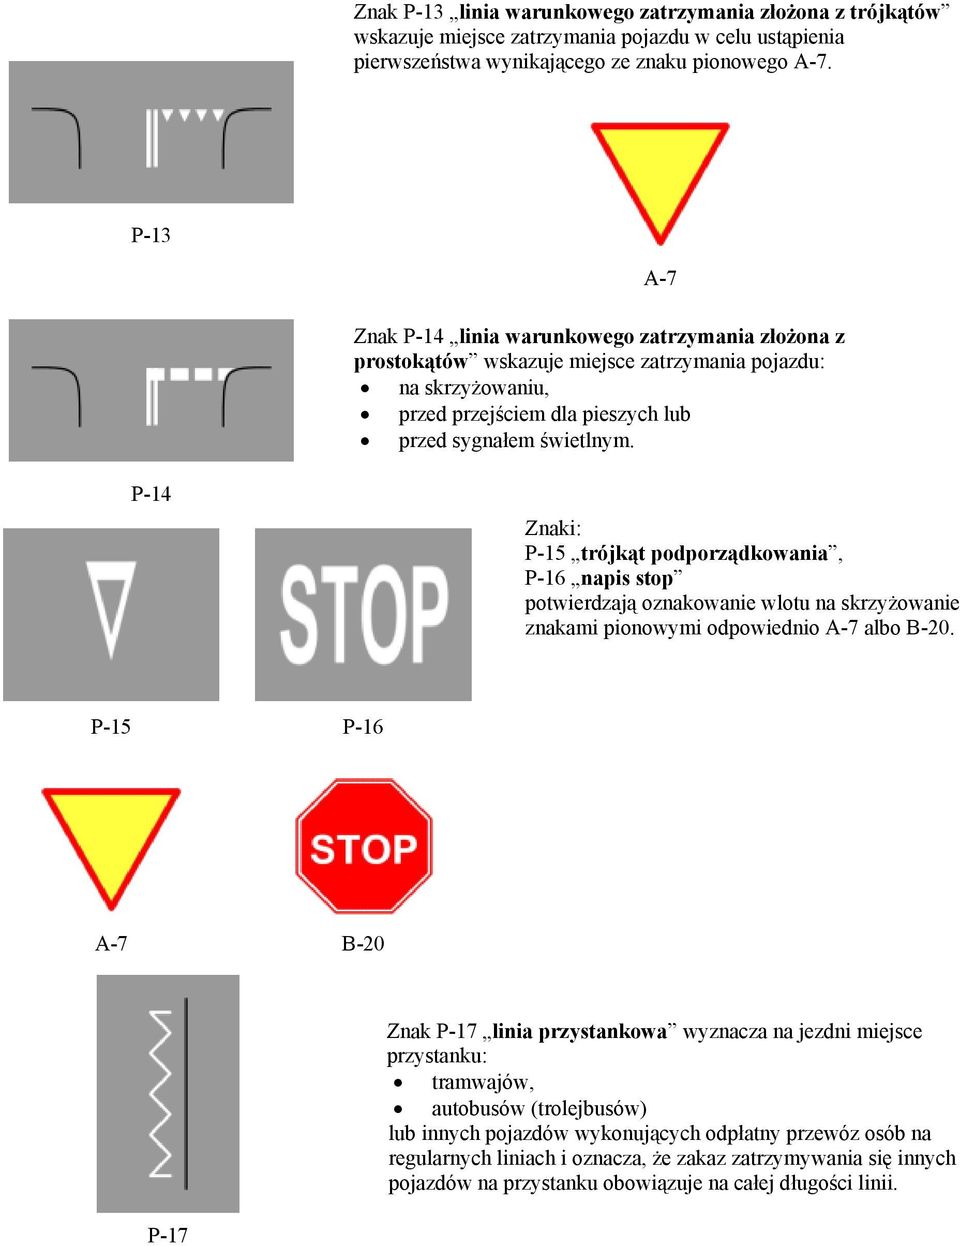 P-14 Znaki: P-15 trójkąt podporządkowania, P-16 napis stop potwierdzają oznakowanie wlotu na skrzyżowanie znakami pionowymi odpowiednio A-7 albo B-20.